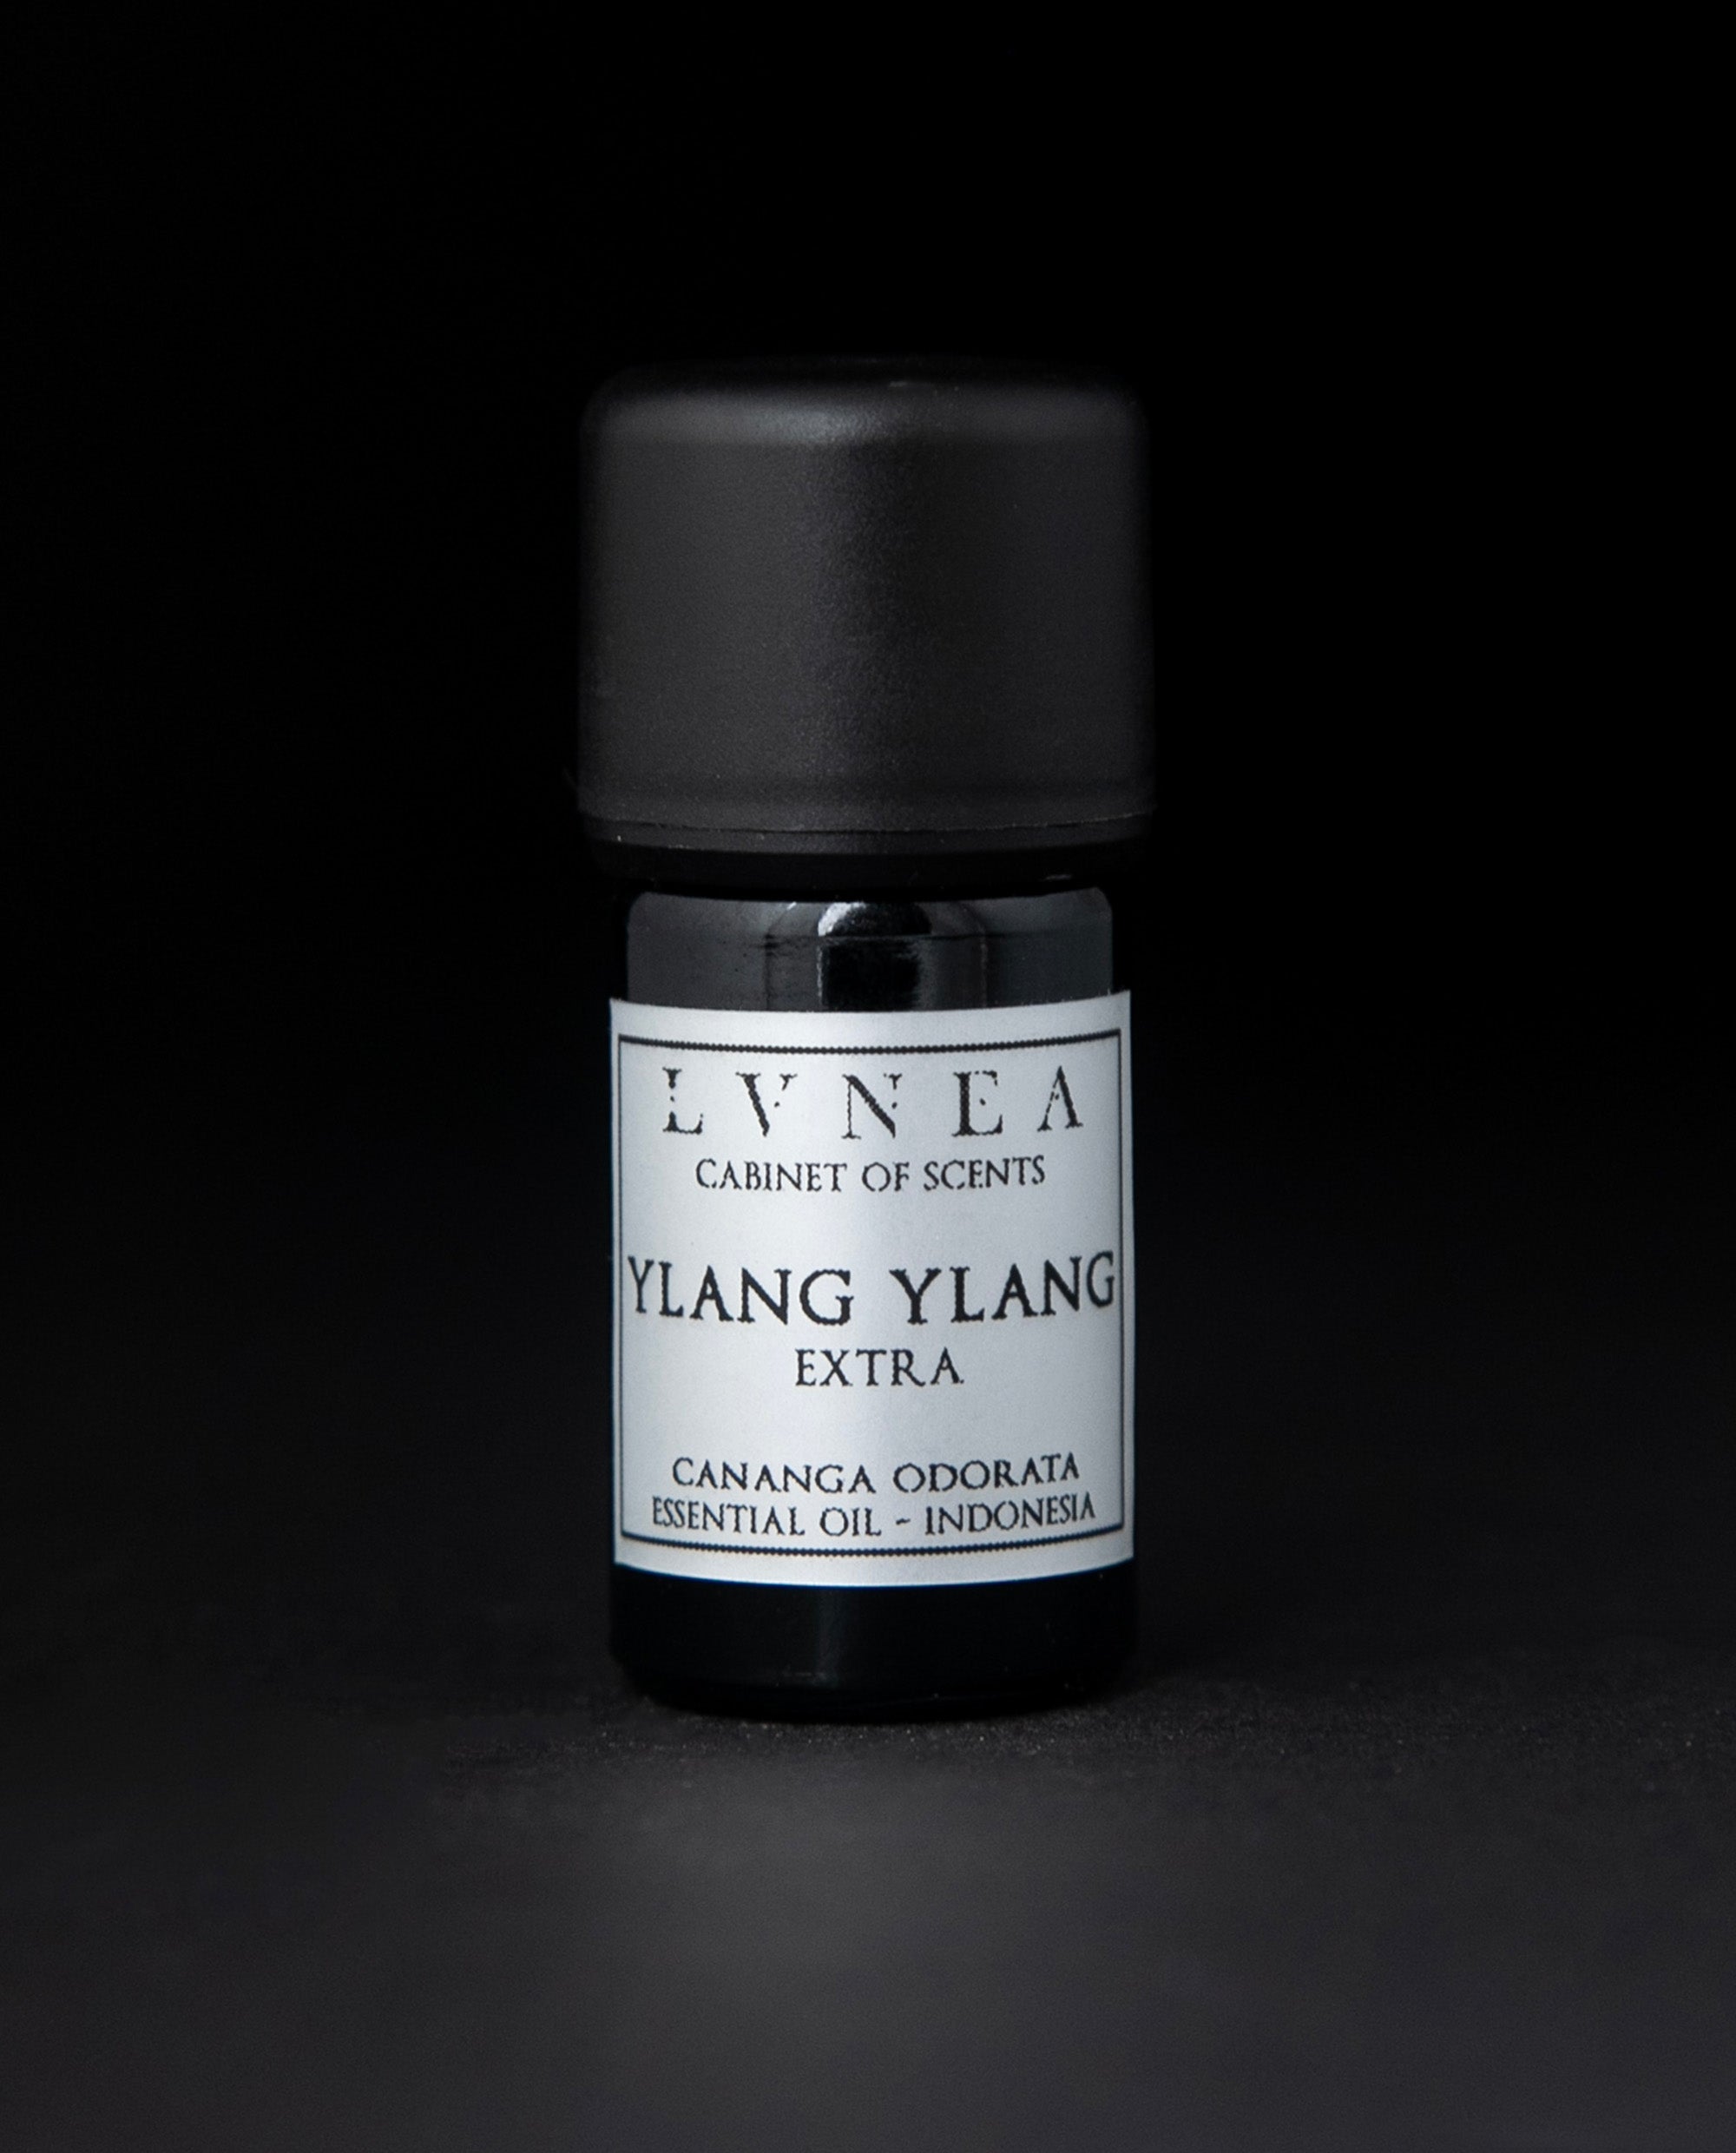 Yin Yang : Bougie Naturelle '' Yin Yang '' Parfumée à l'Huile Essentielle  de Lavande, d'Ylang Ylang et de fleurs d'Oranger ~ Encens de Qualité